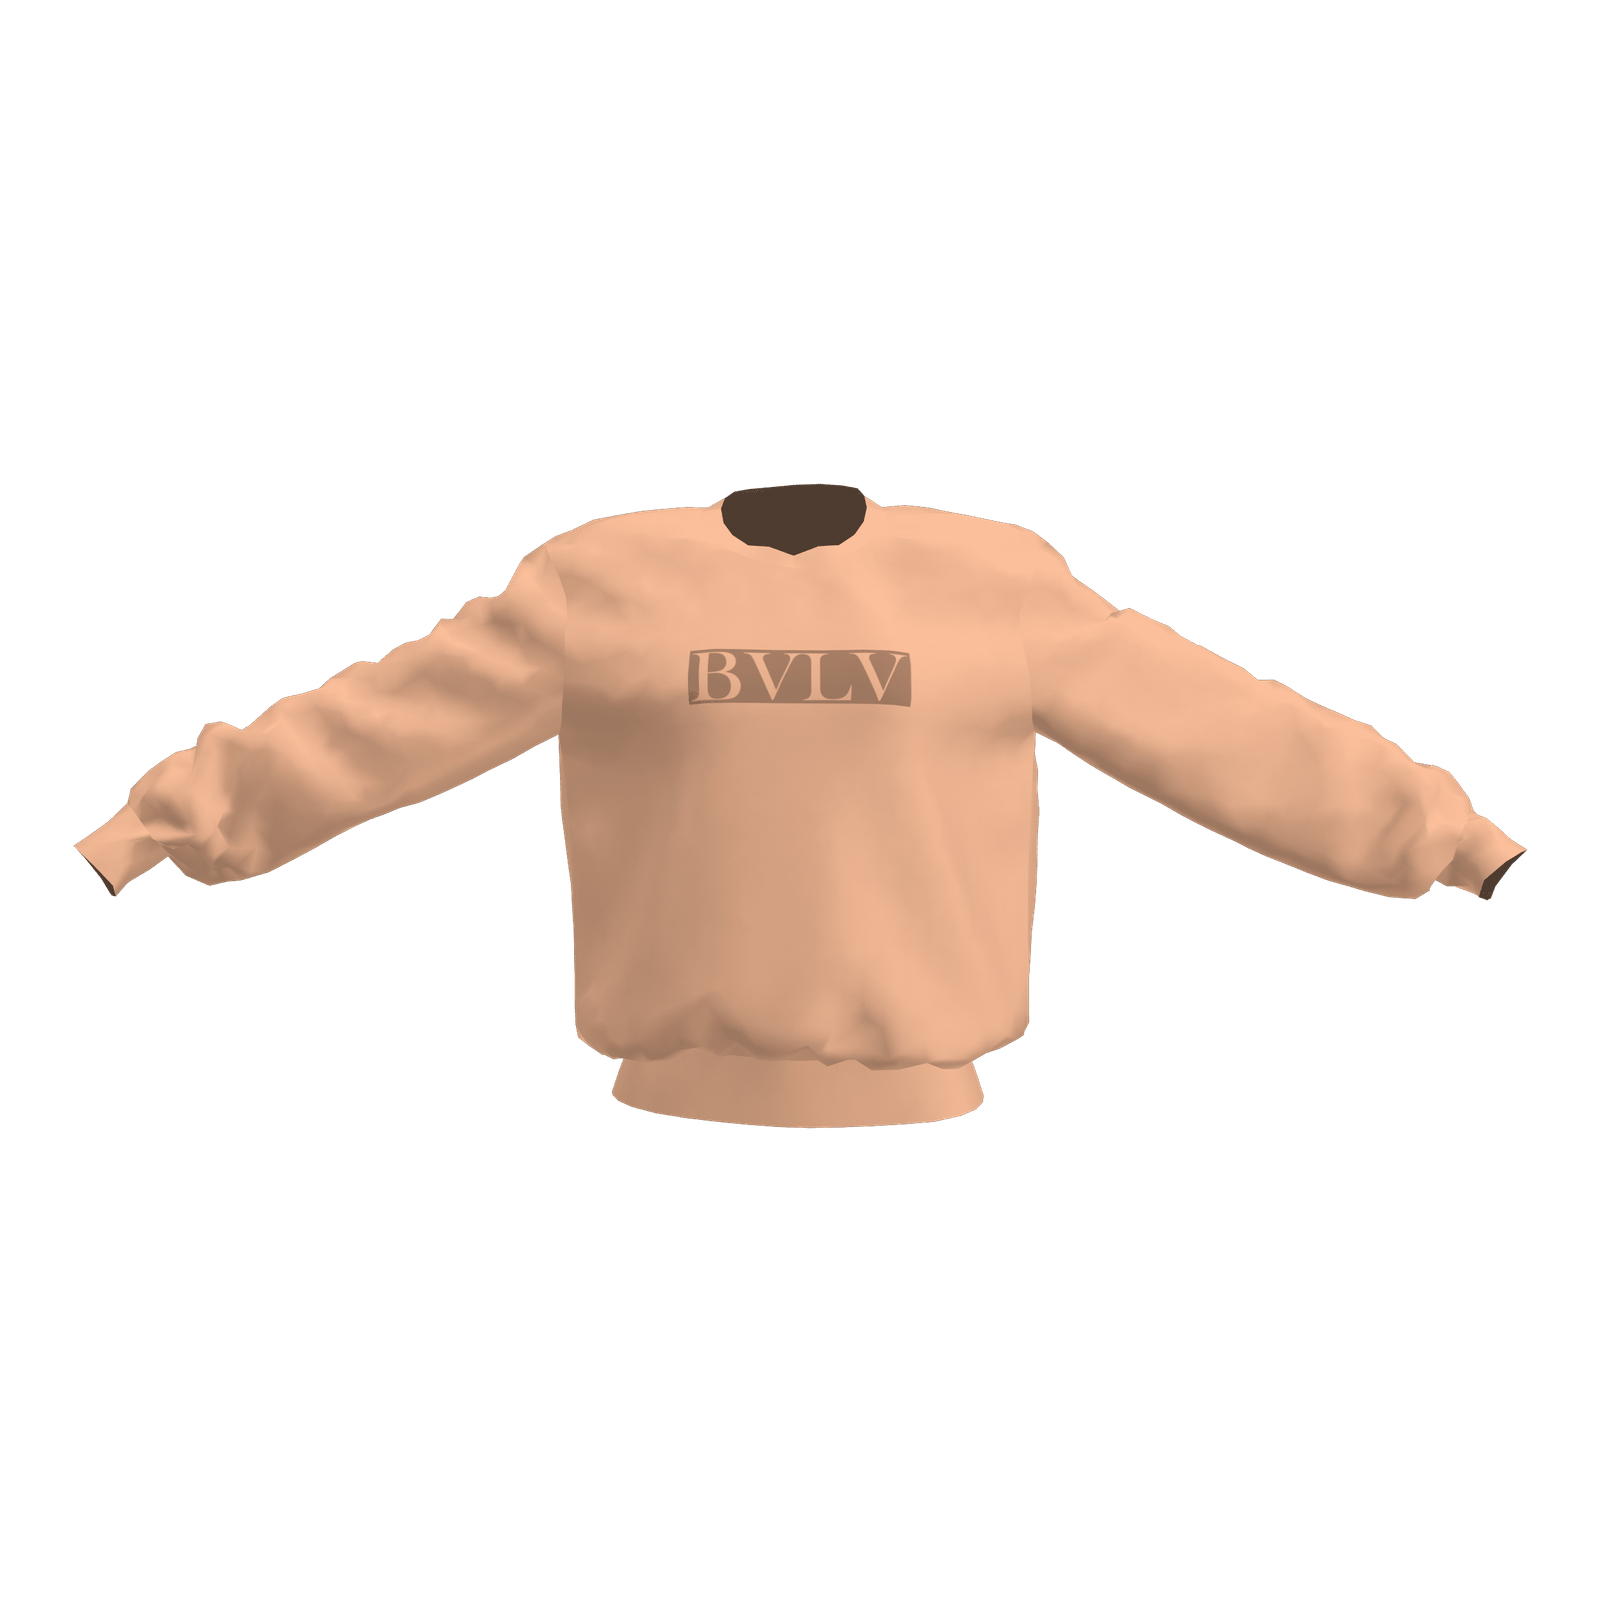 BVLV Basic Sweater - BVLV